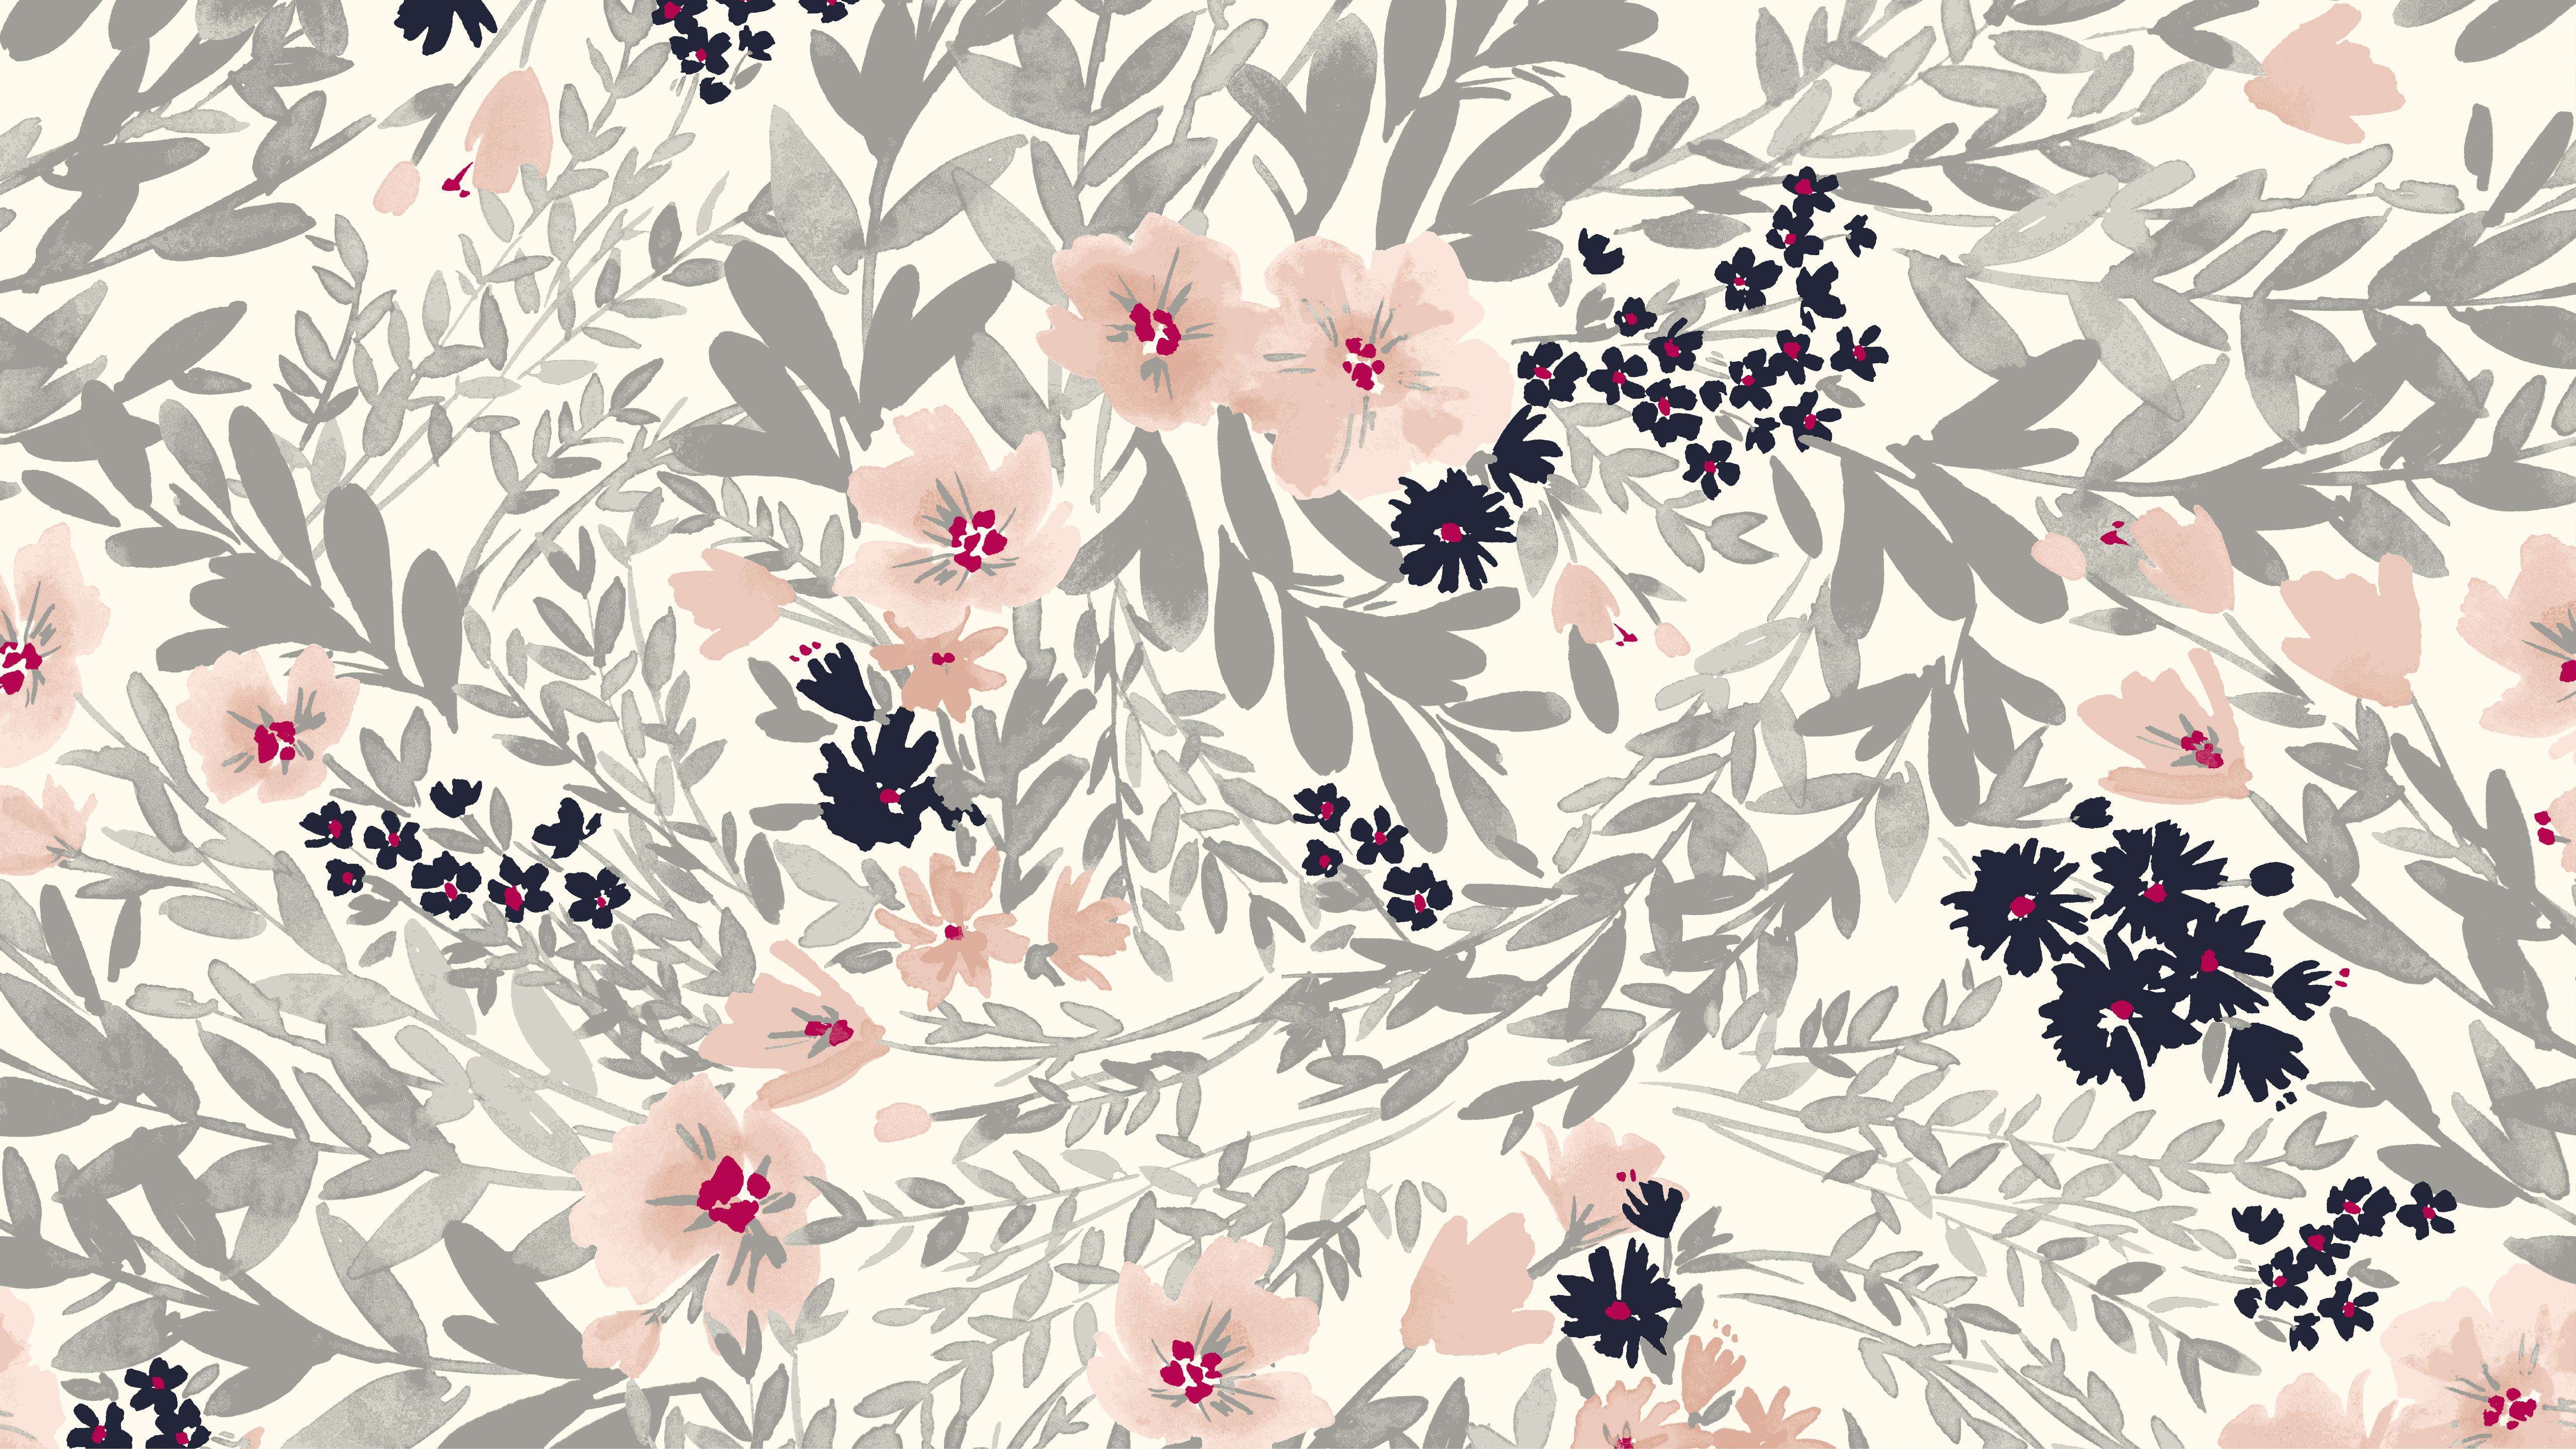 [68+] Free Floral Desktop Wallpaper - WallpaperSafari